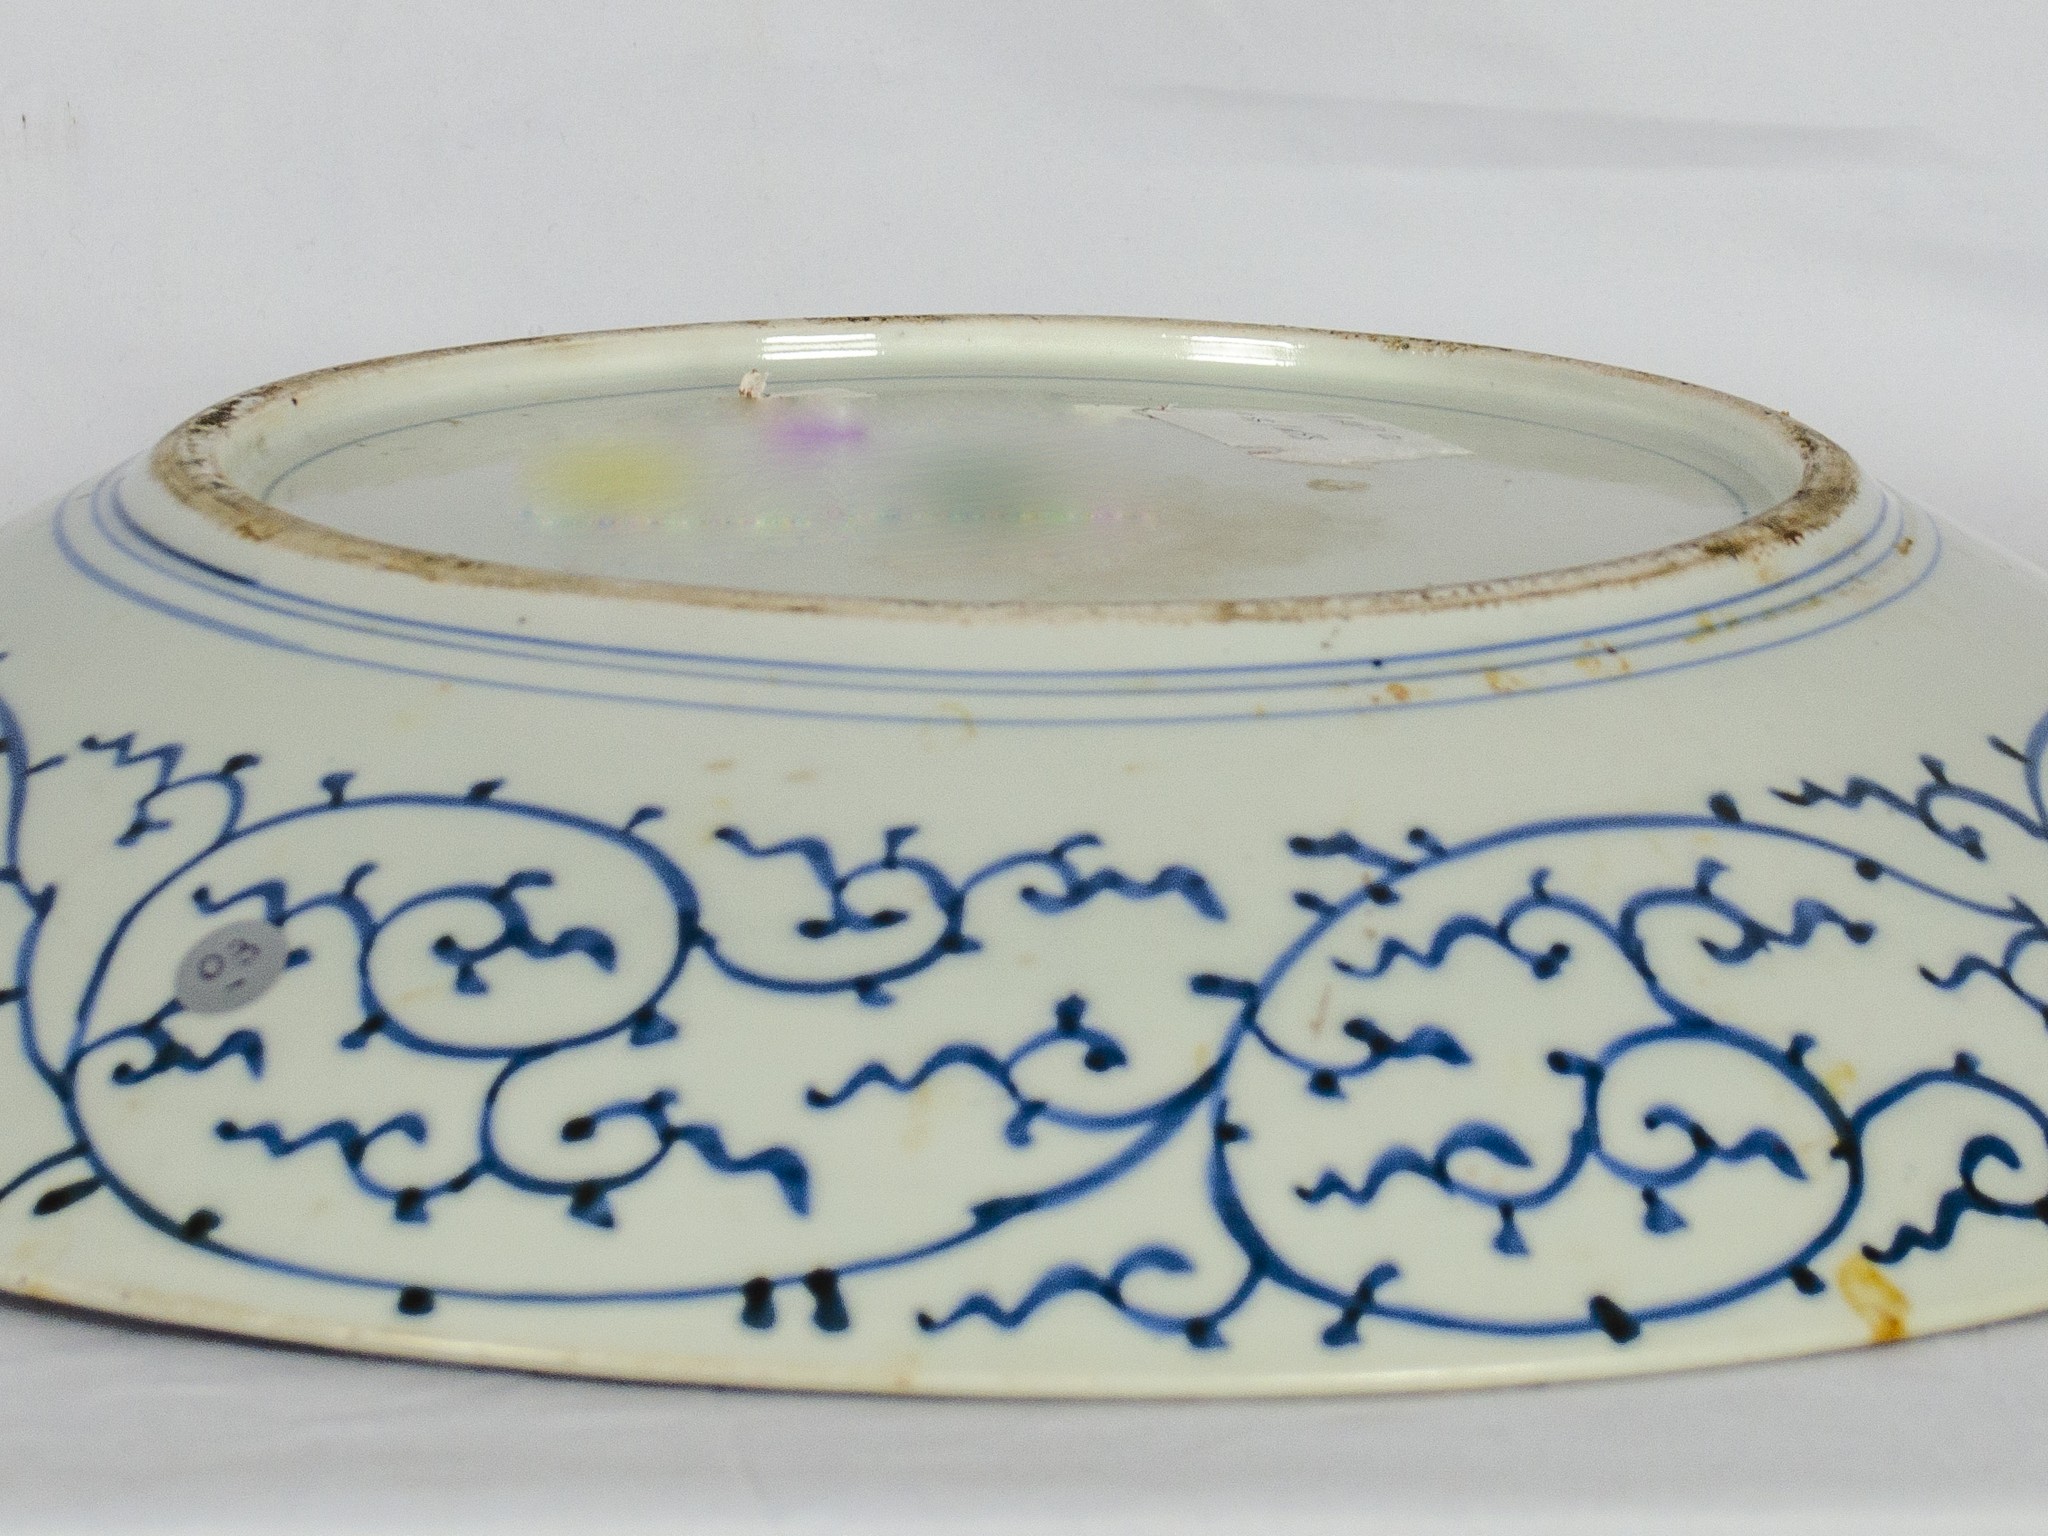 Grande piatto in porcellana - Image 3 of 3